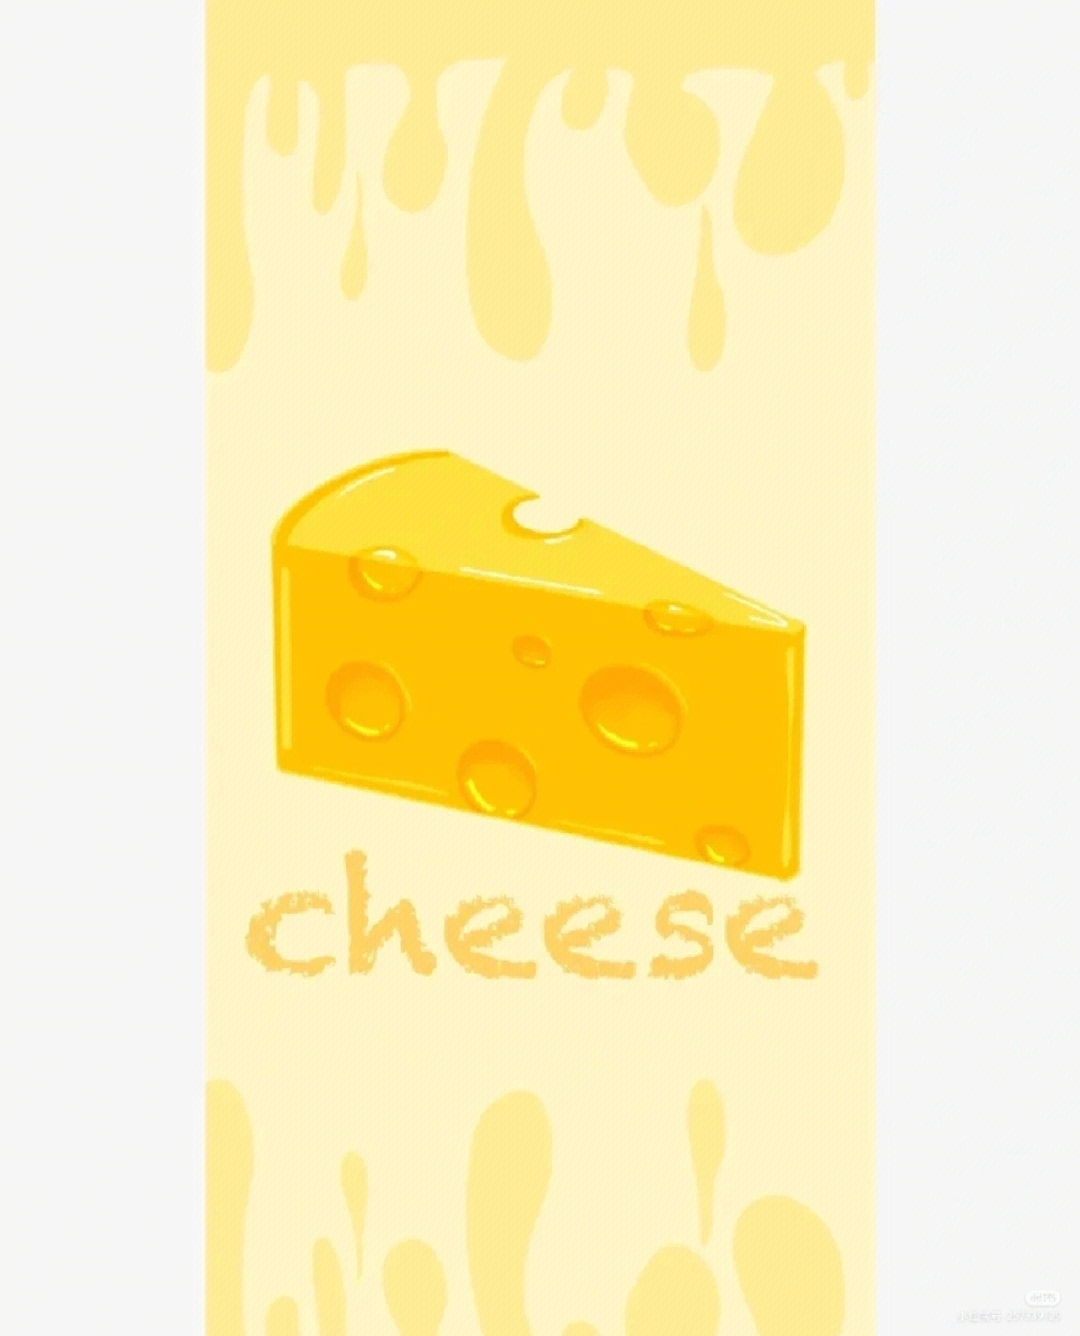 奶酪字体壁纸图片